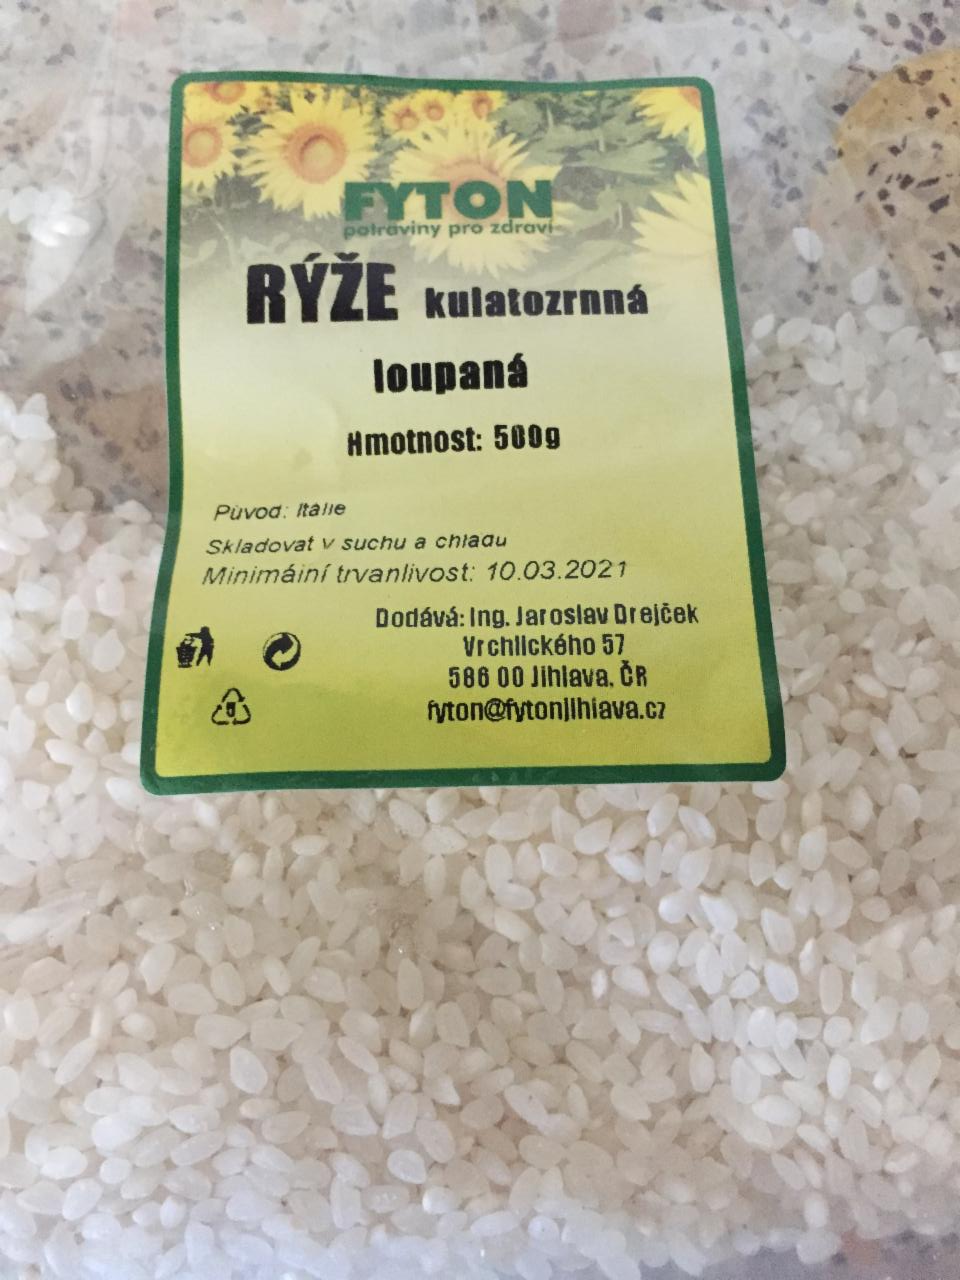 Fotografie - Rýže kulatozrnná loupaná Fyton